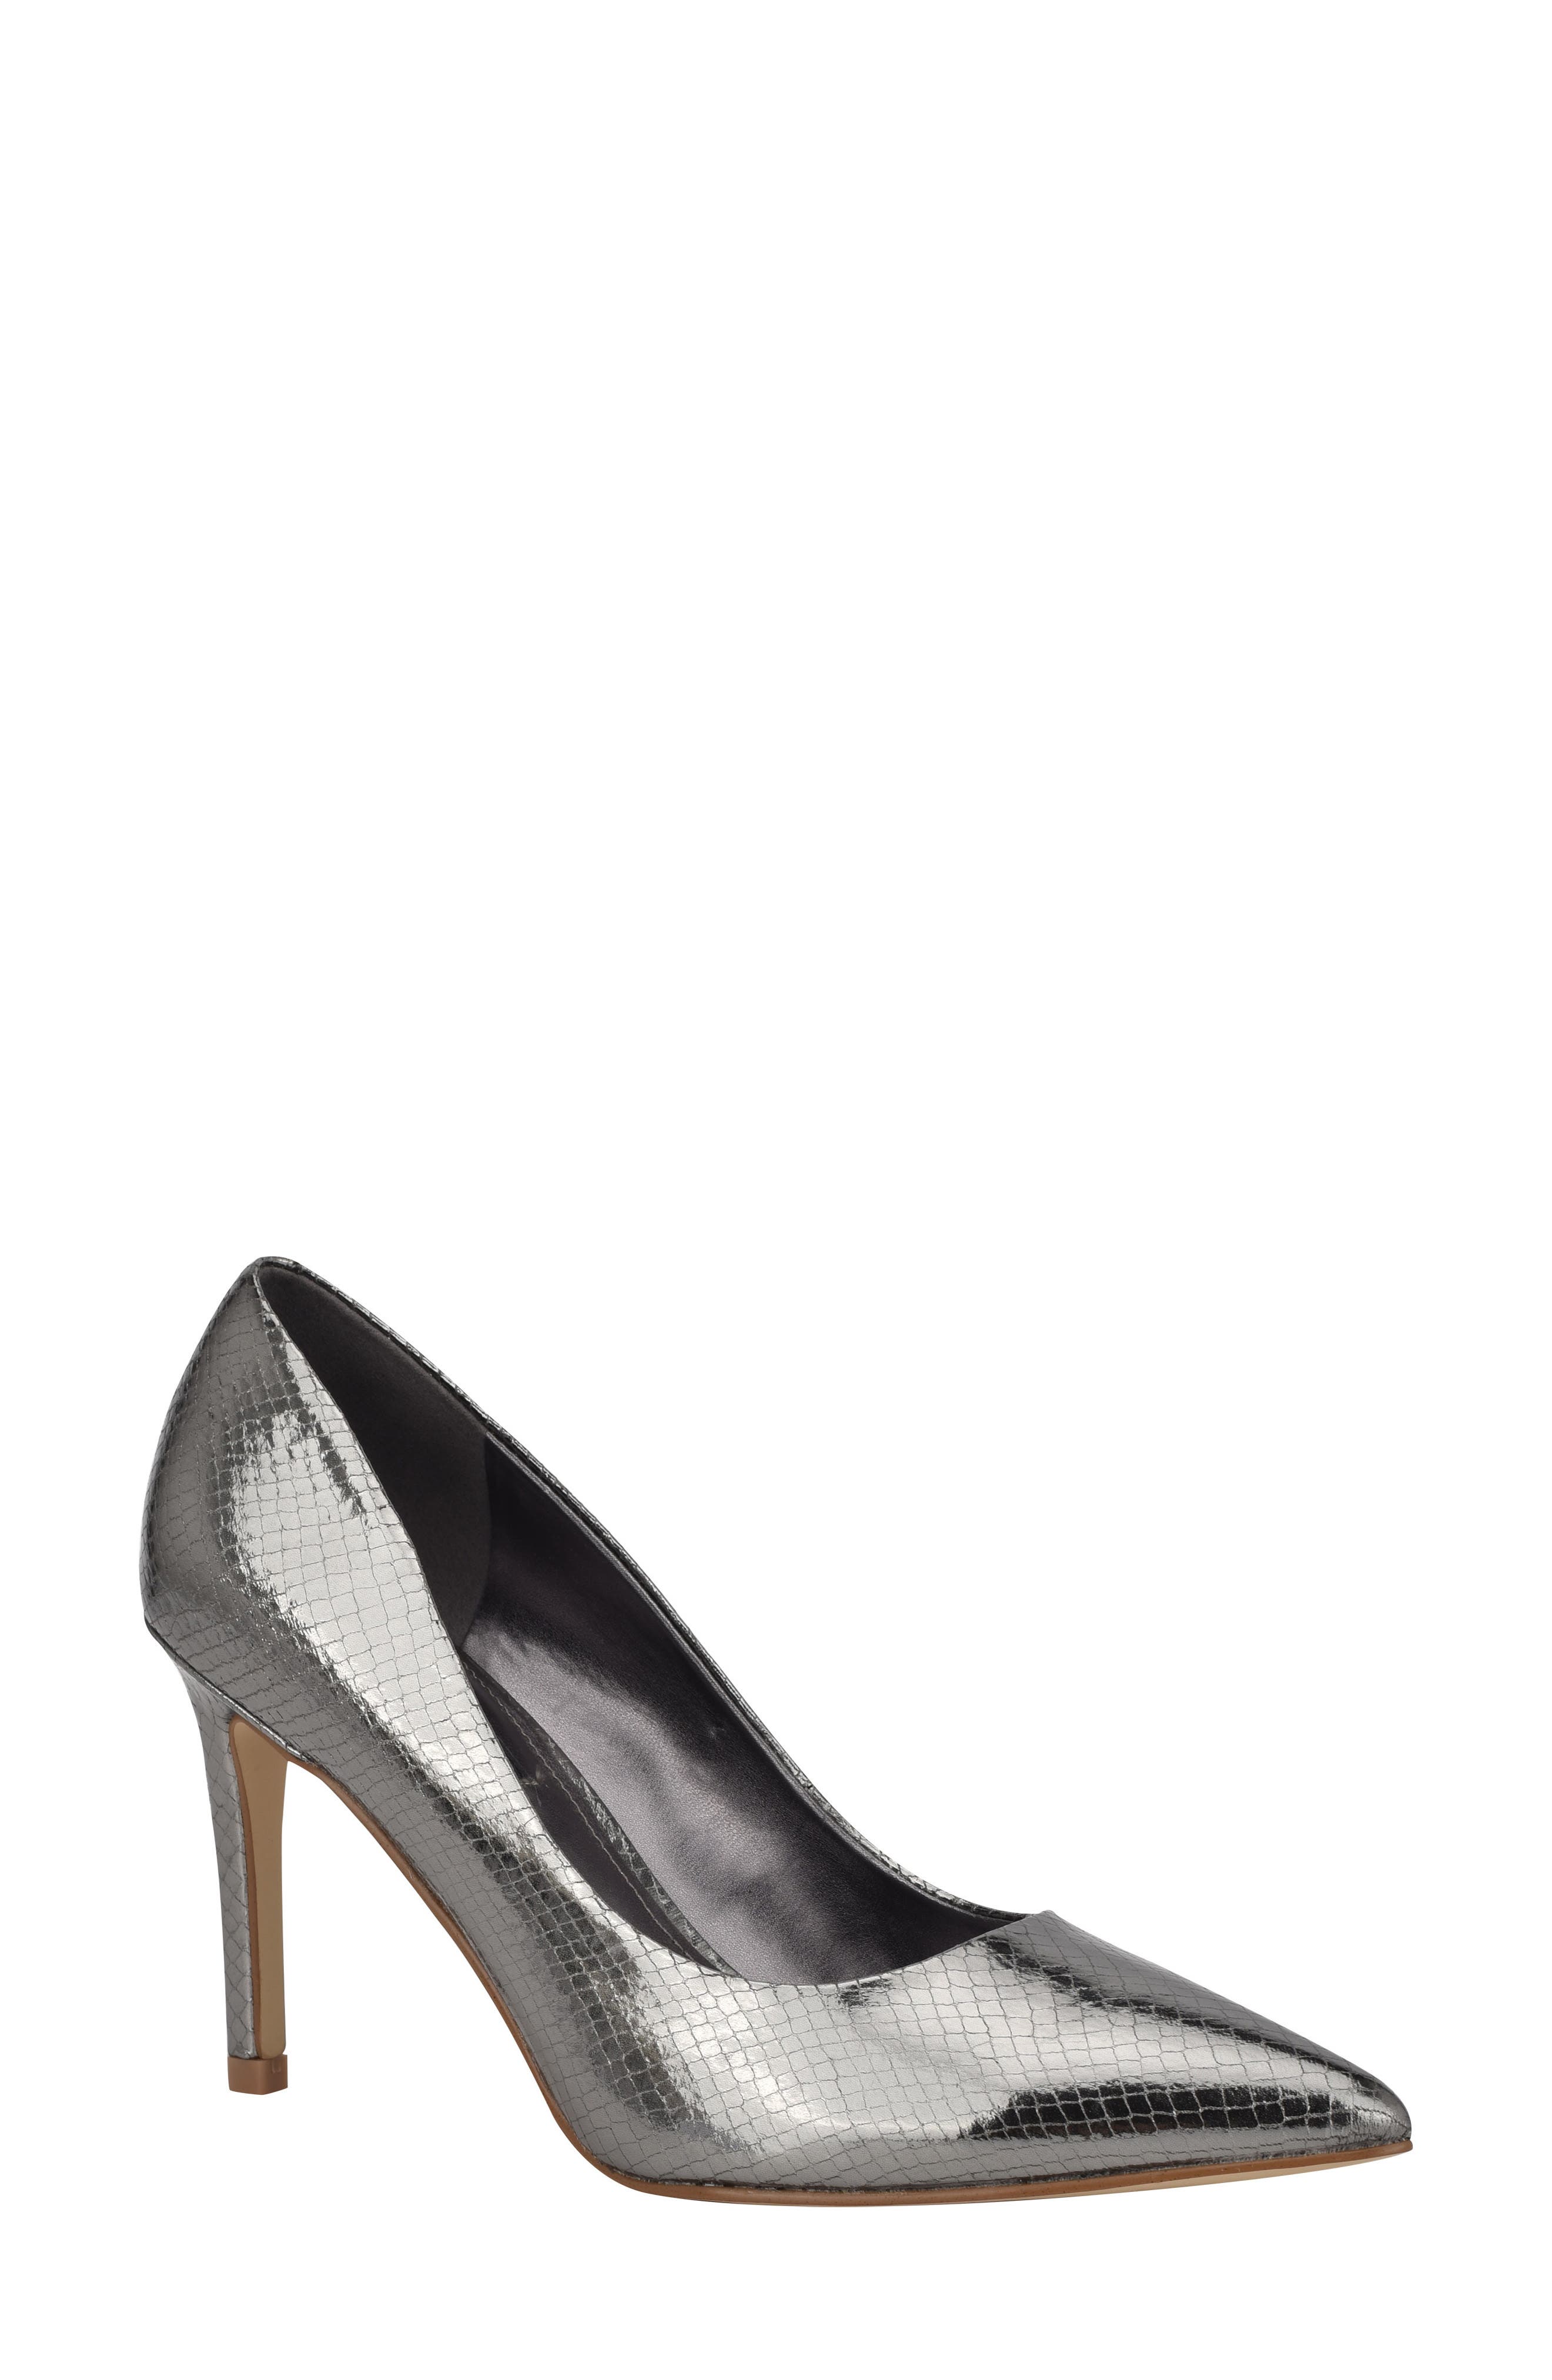 nine west silver heels